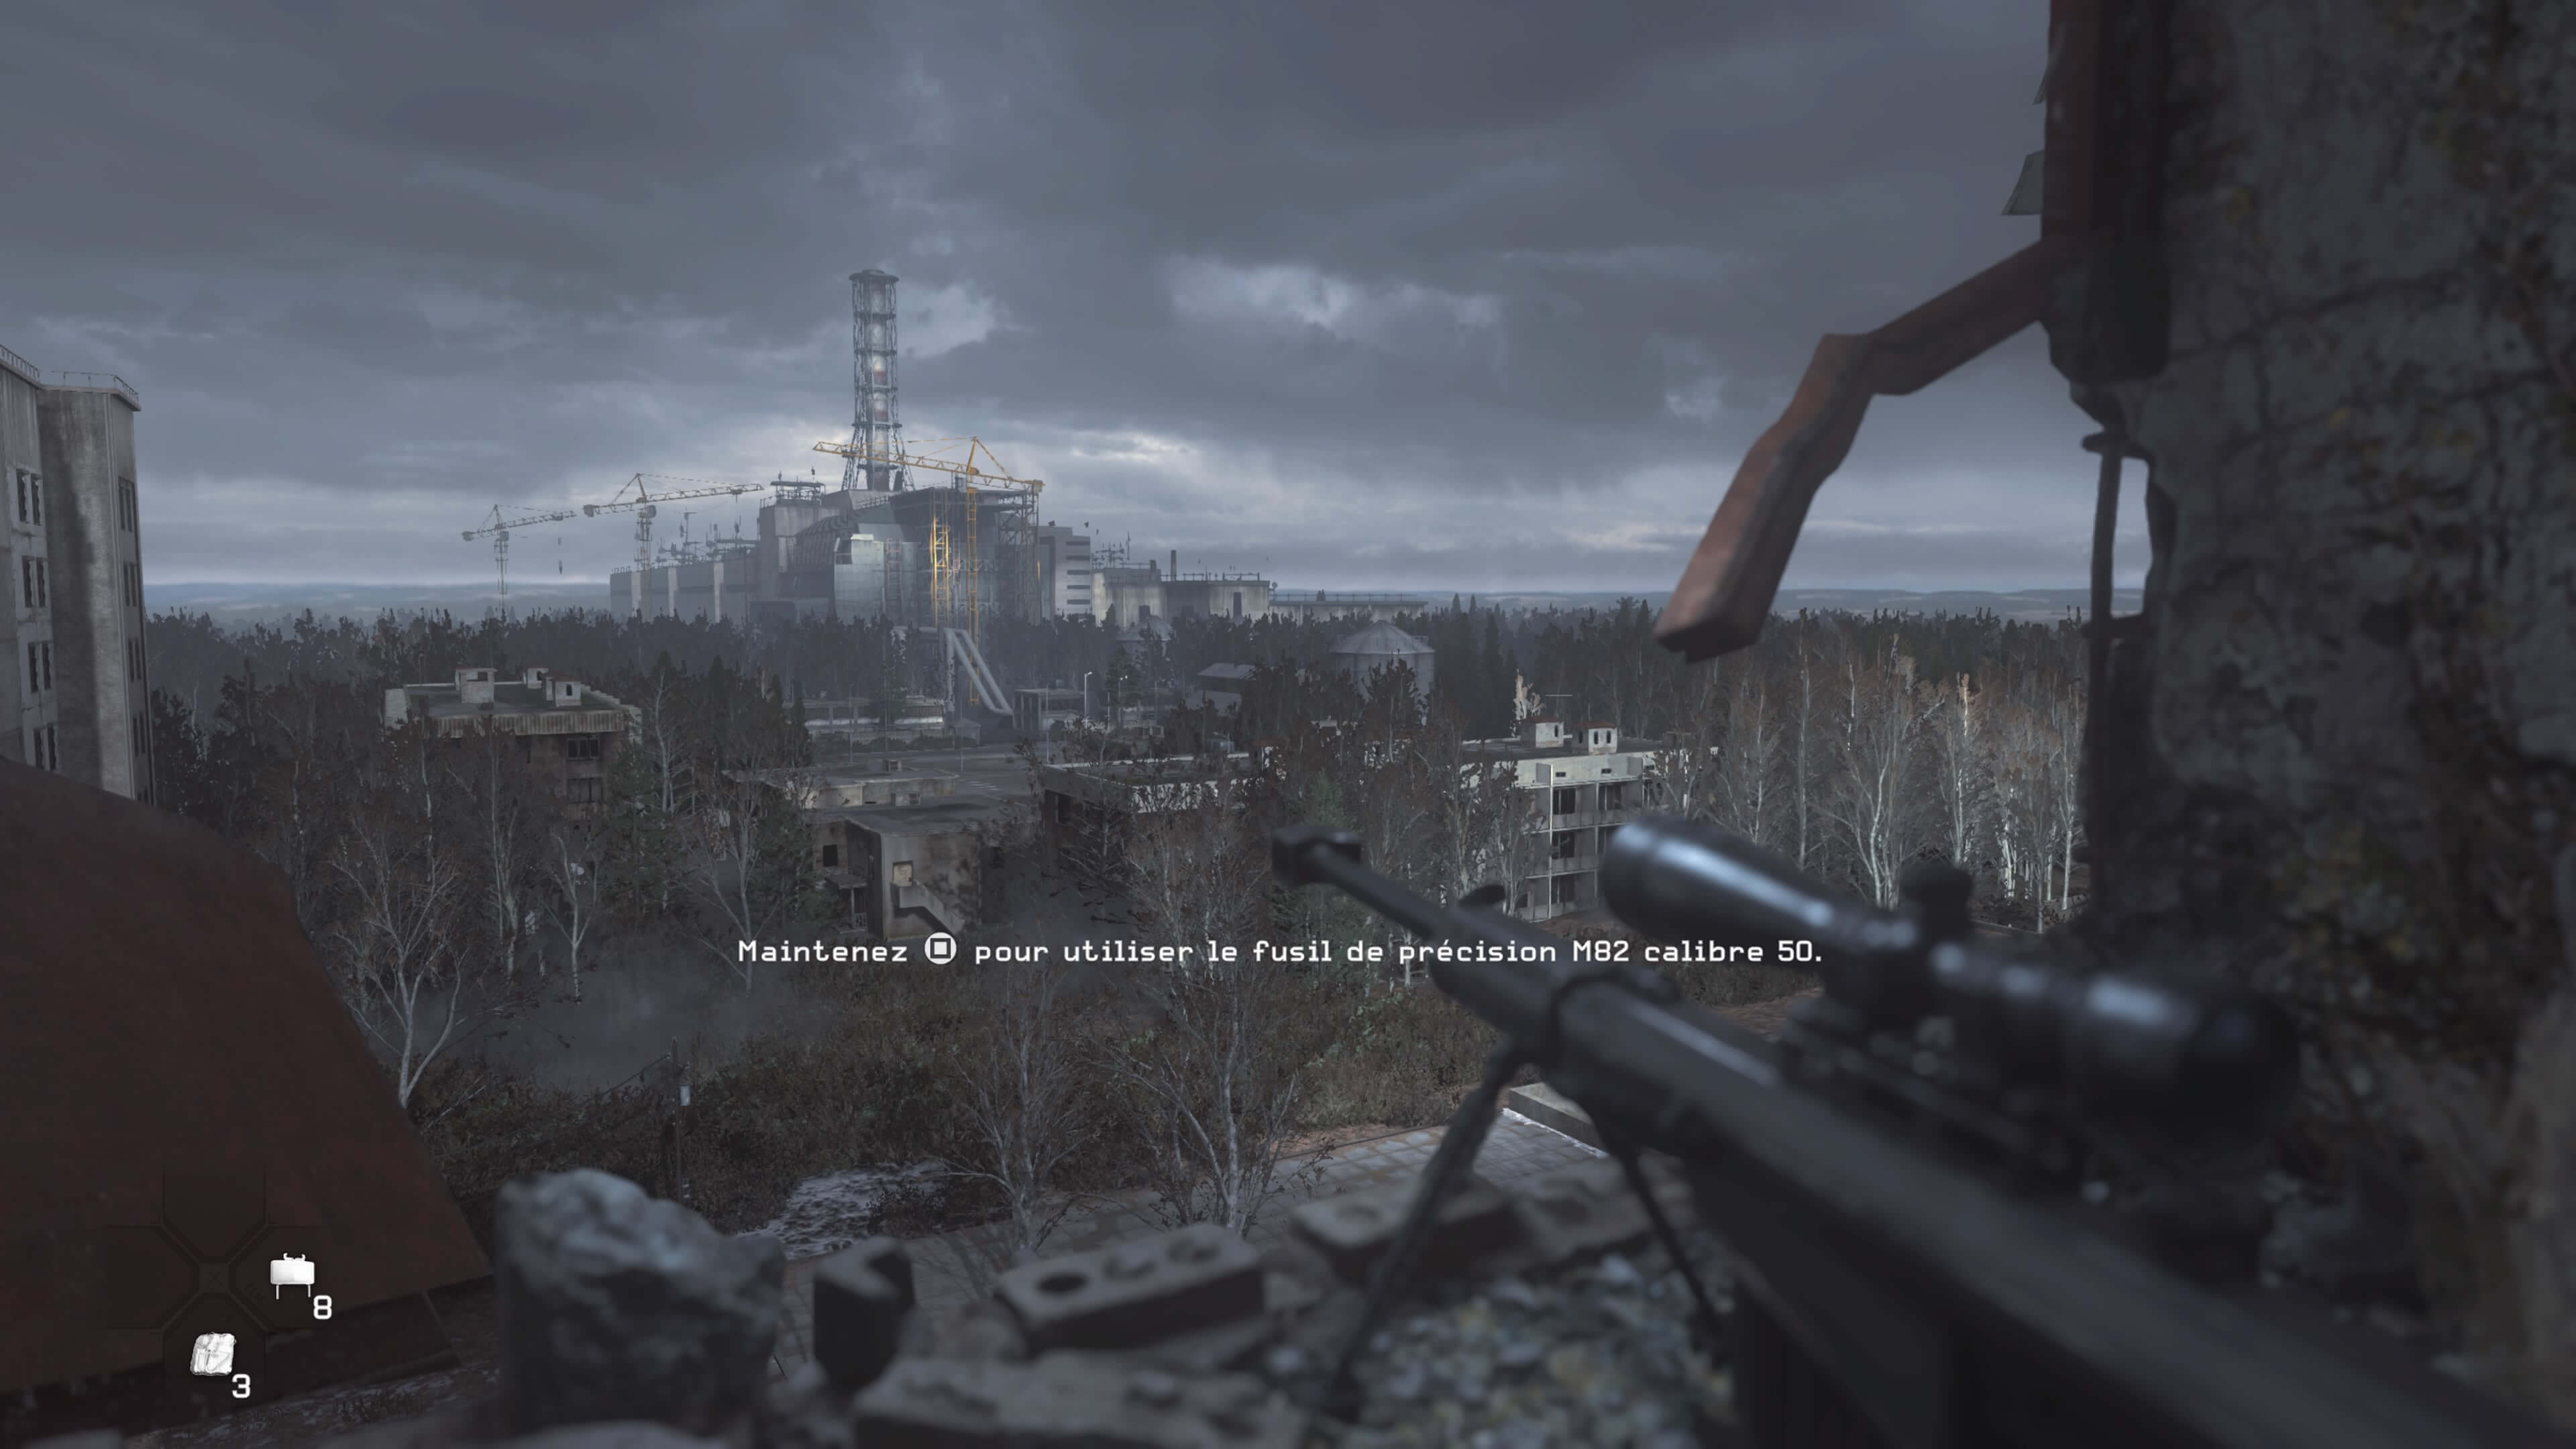 Игры про чернобыль на телефон. Call of Duty 4 Modern Warfare Чернобыль. Call of Duty 4 Modern Warfare Припять. Сталкер 2 ЧАЭС. Миссия в Припяти в Call of Duty Modern Warfare 4 Remastered.